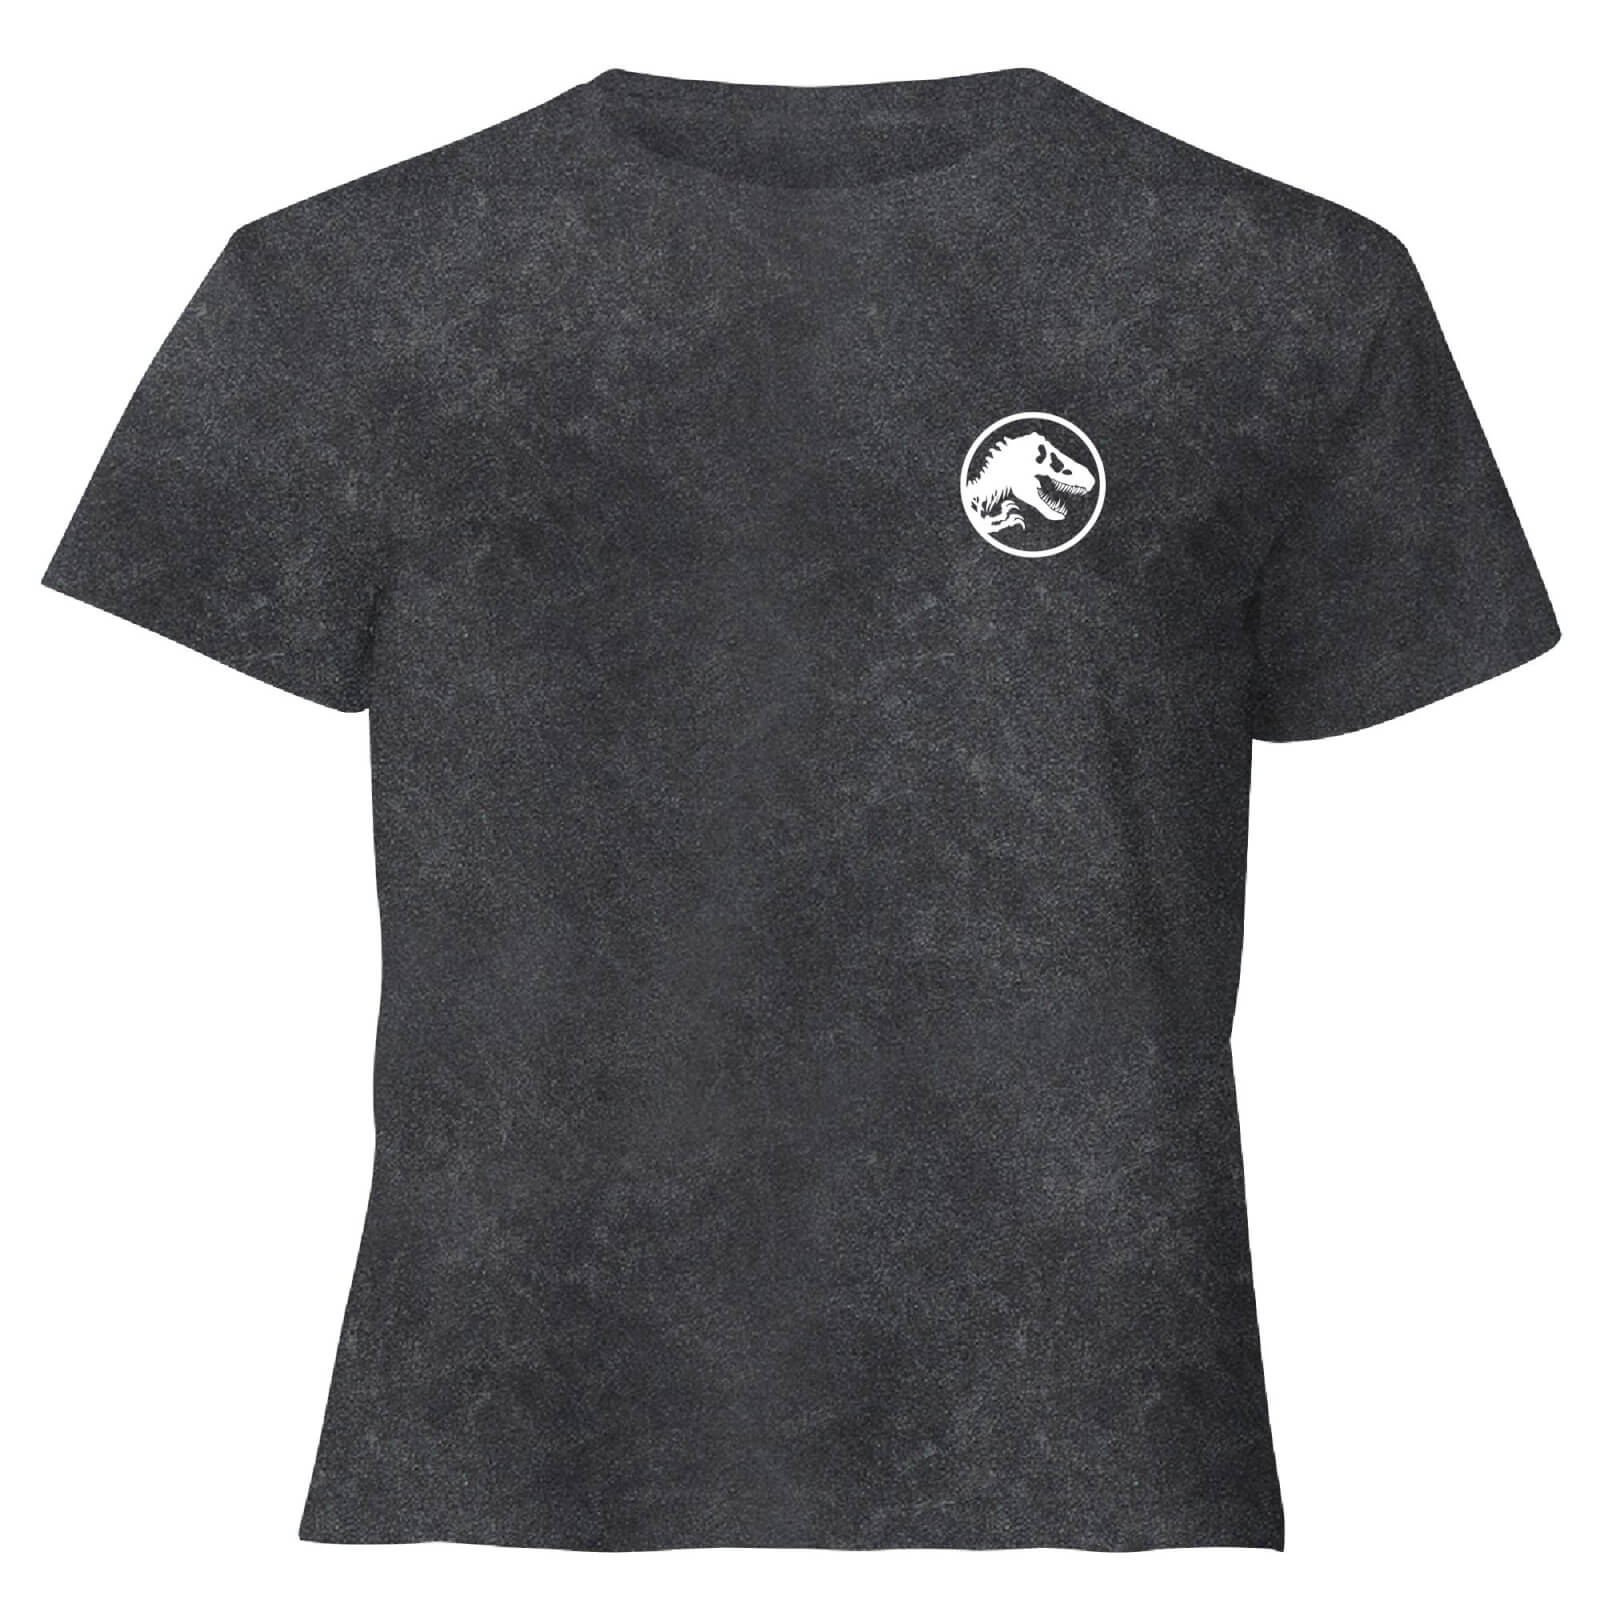 Image of Jurassic Park Primal Limited Variant Ranger Logo - Women's Cropped T-Shirt - Black Acid Wash - XL - Black Acid Wash